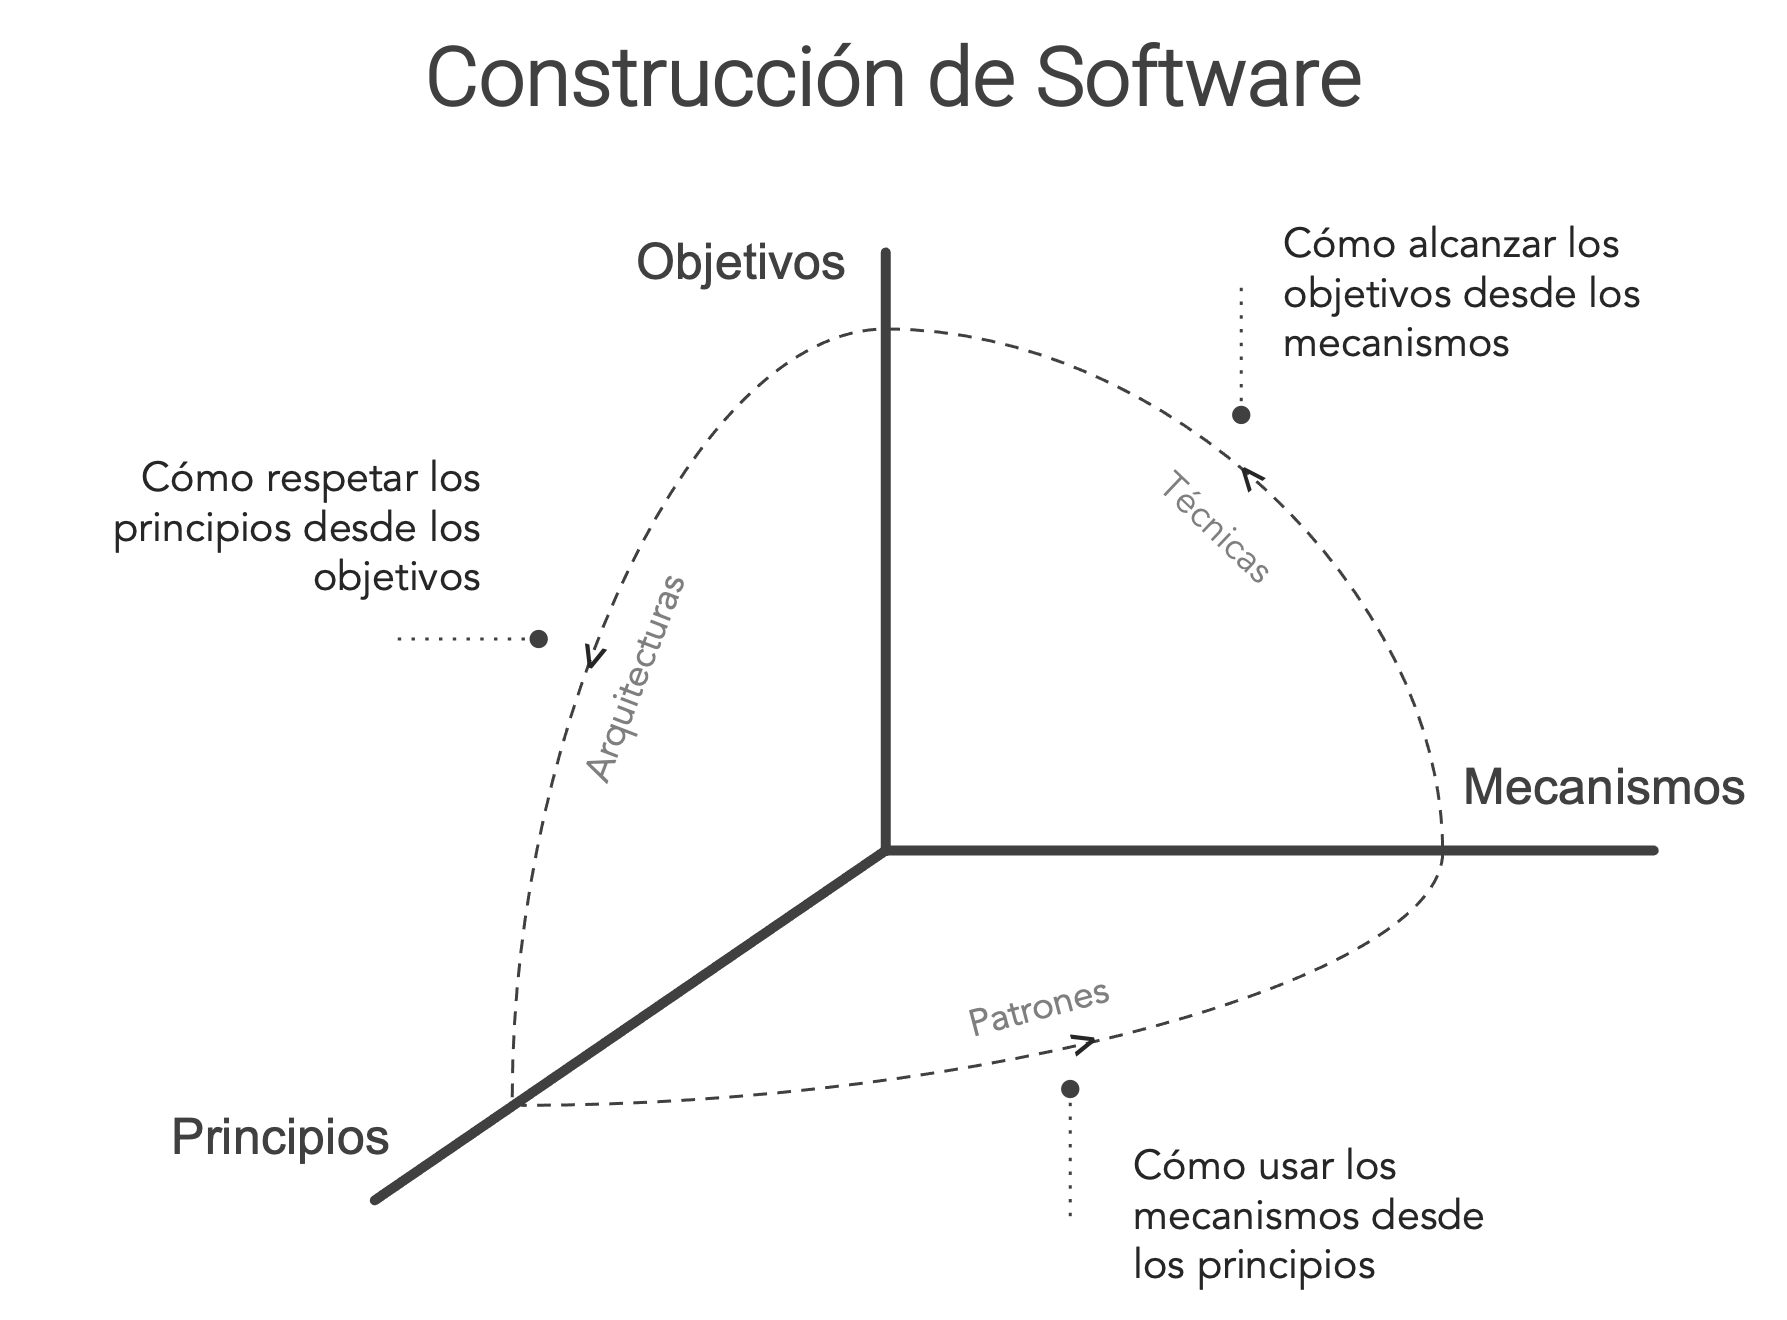 Paradigmas de Construcción de Software